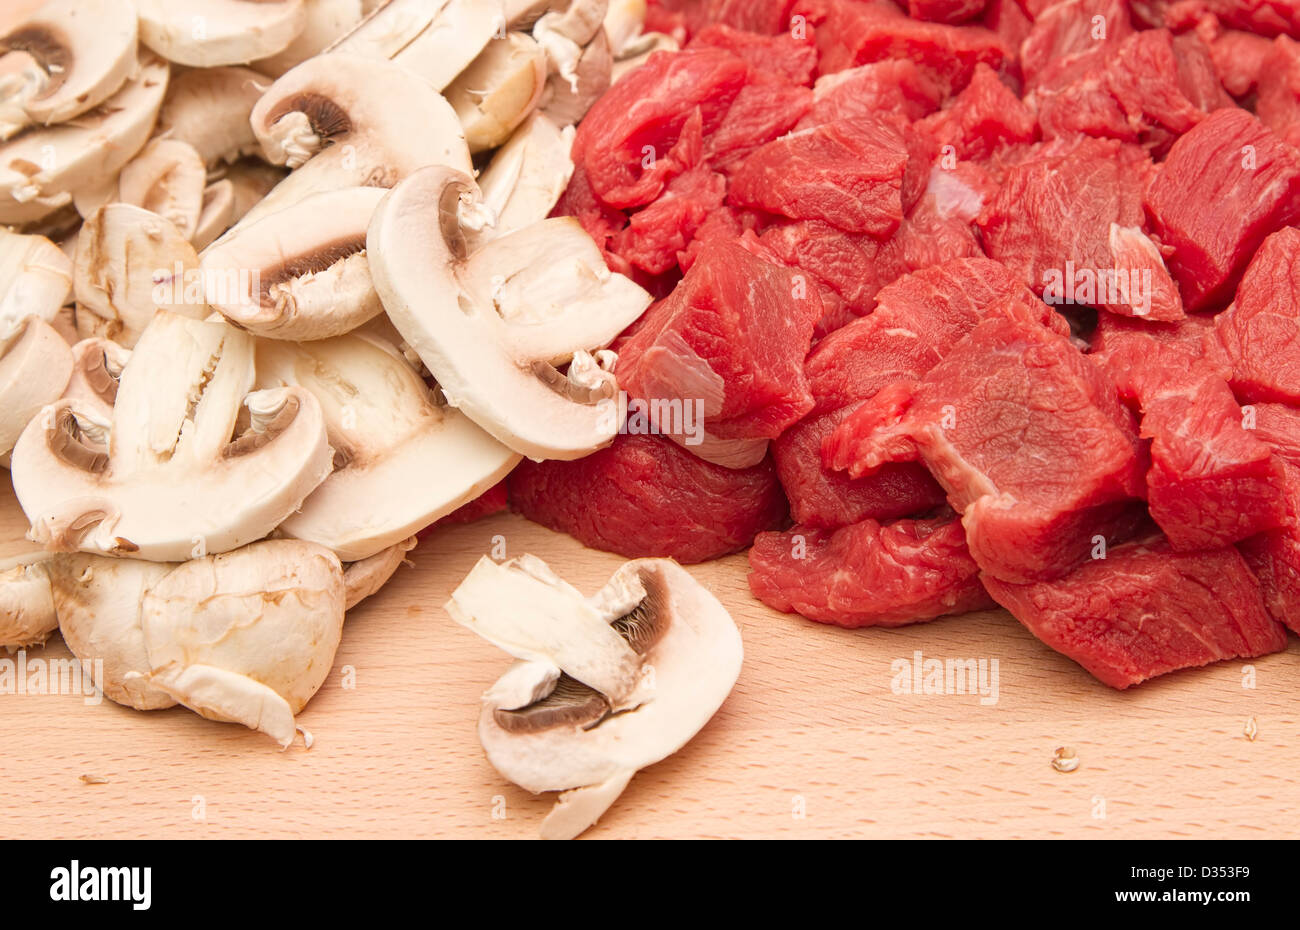 Steak de bœuf haché frais et champignons sur planche à découper en bois Banque D'Images